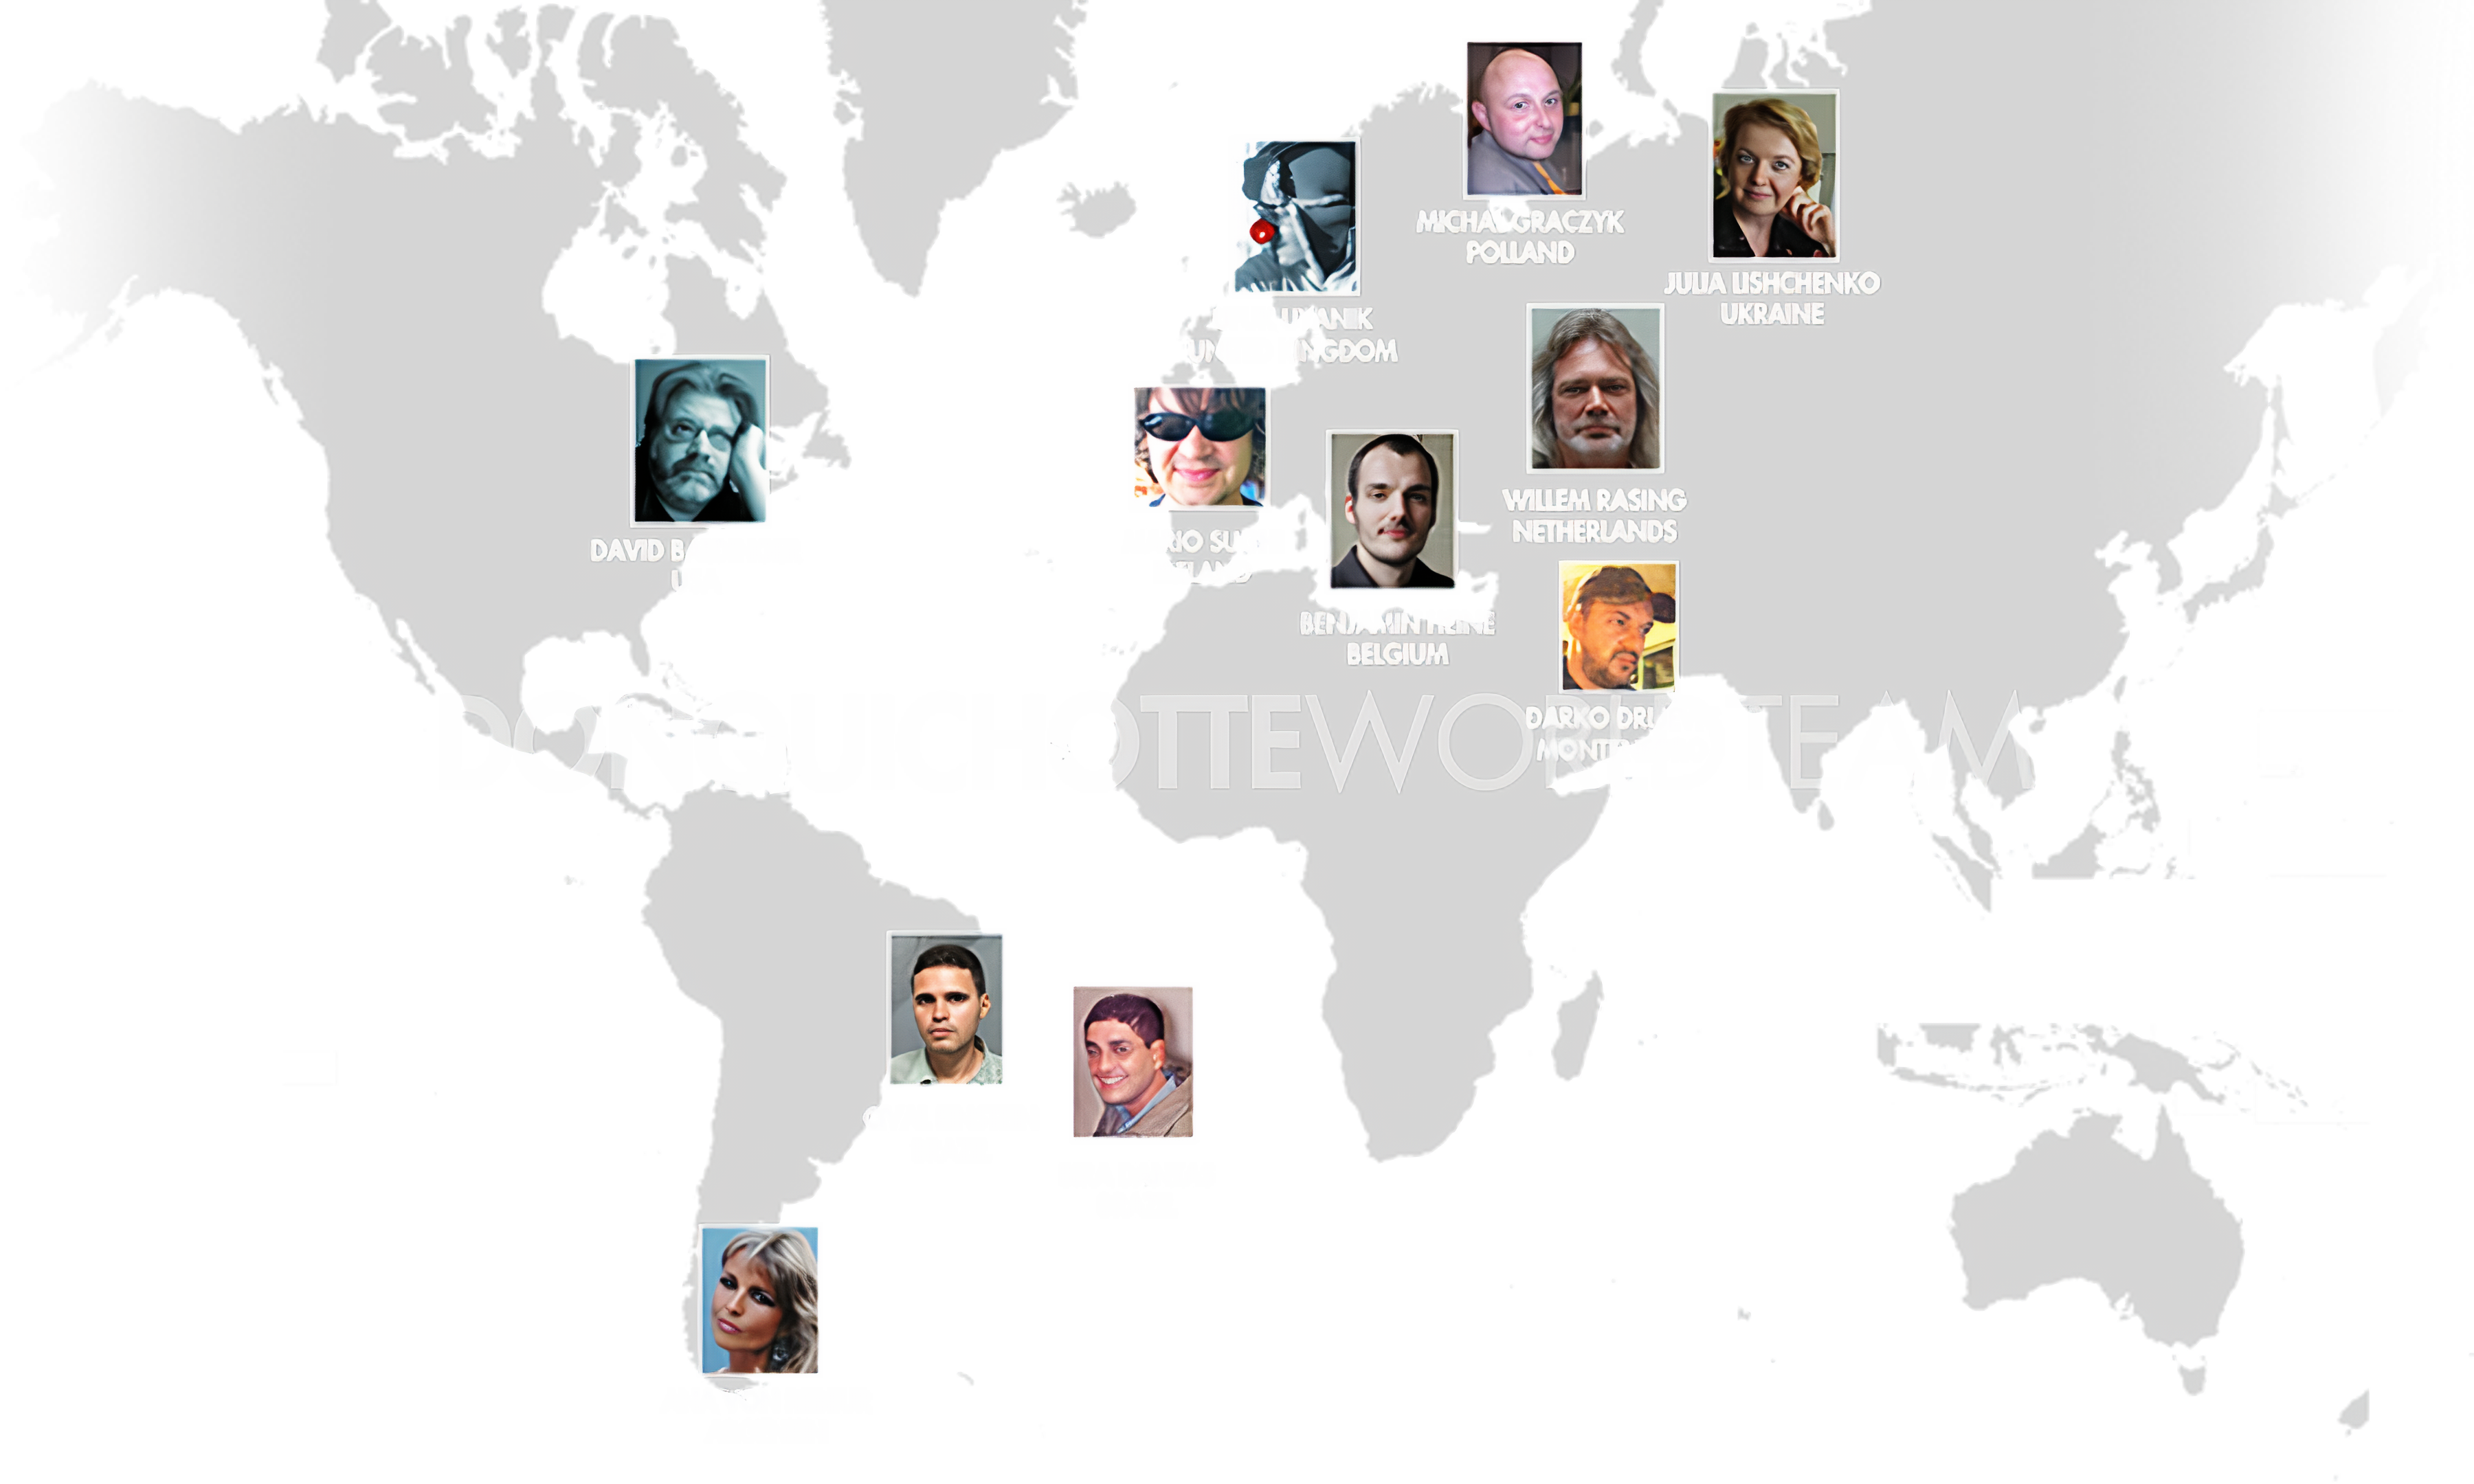 DonQuichotte World Team